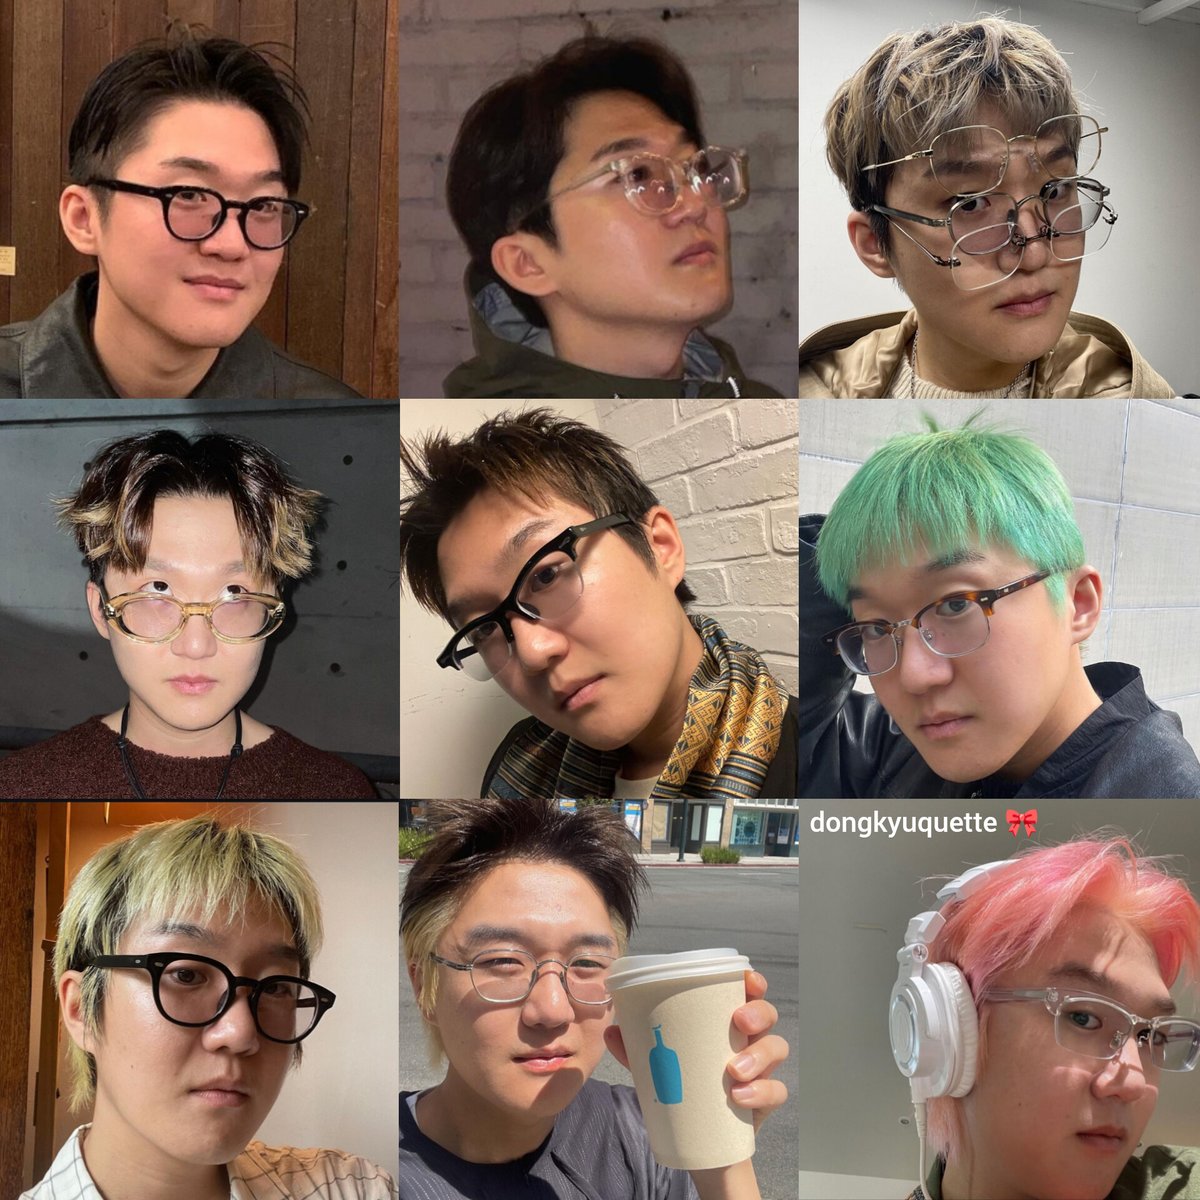 soonjong eyeglasses 👓 and hairstyles 💗